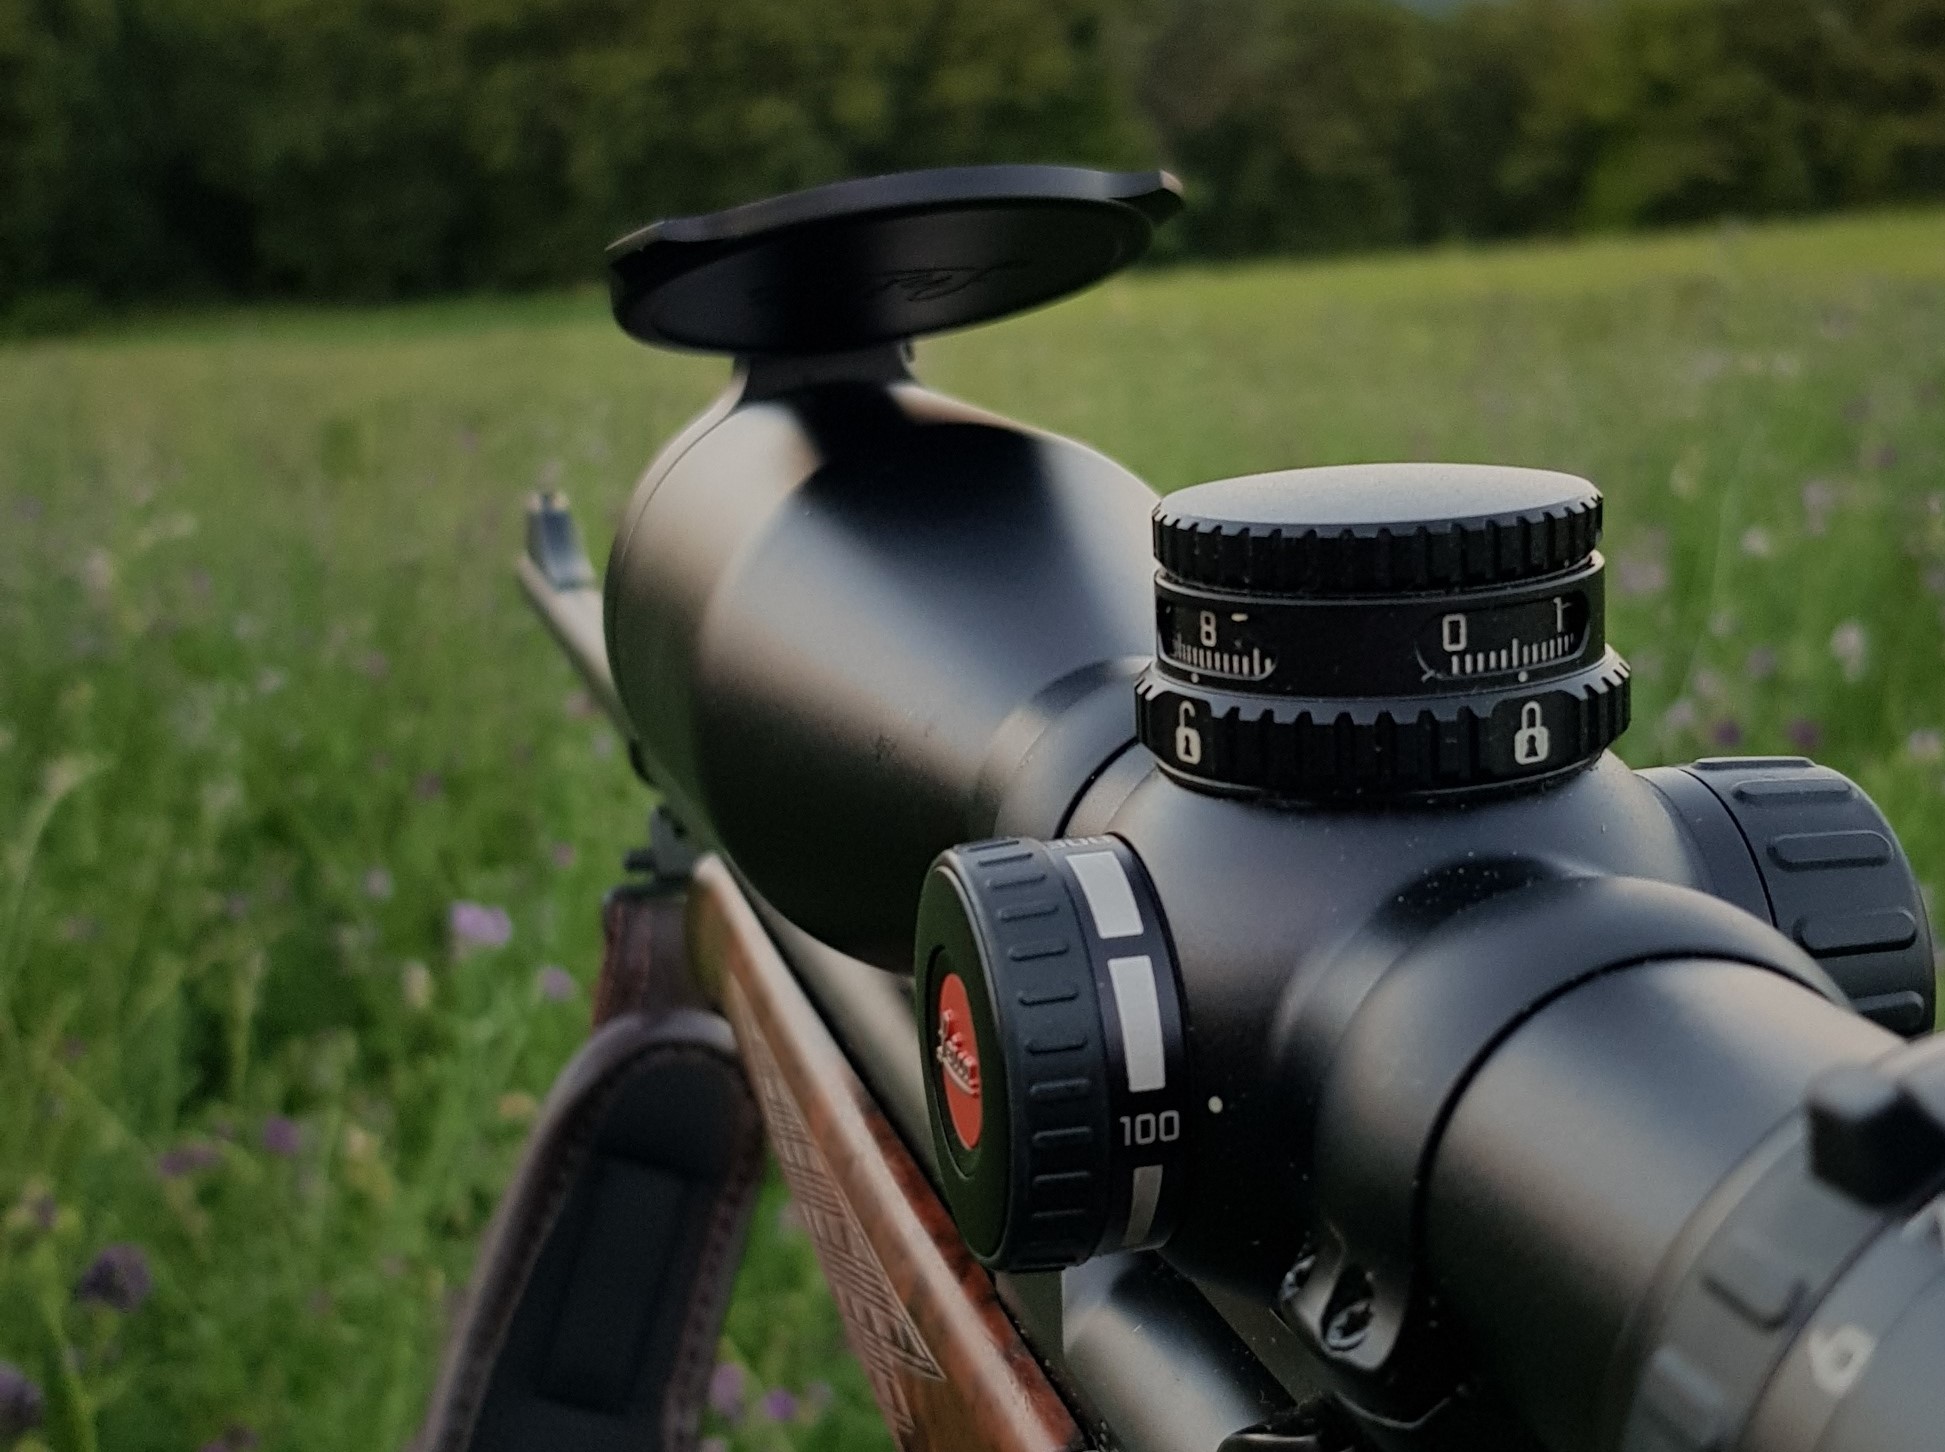 Il Flip cap sull'obiettivo, in metallo e dotato di funzionalità di centratura rapida, è decisamente un accessorio di classe per il miglior cannocchiale da caccia di selezione, il Magnus i di Leica.